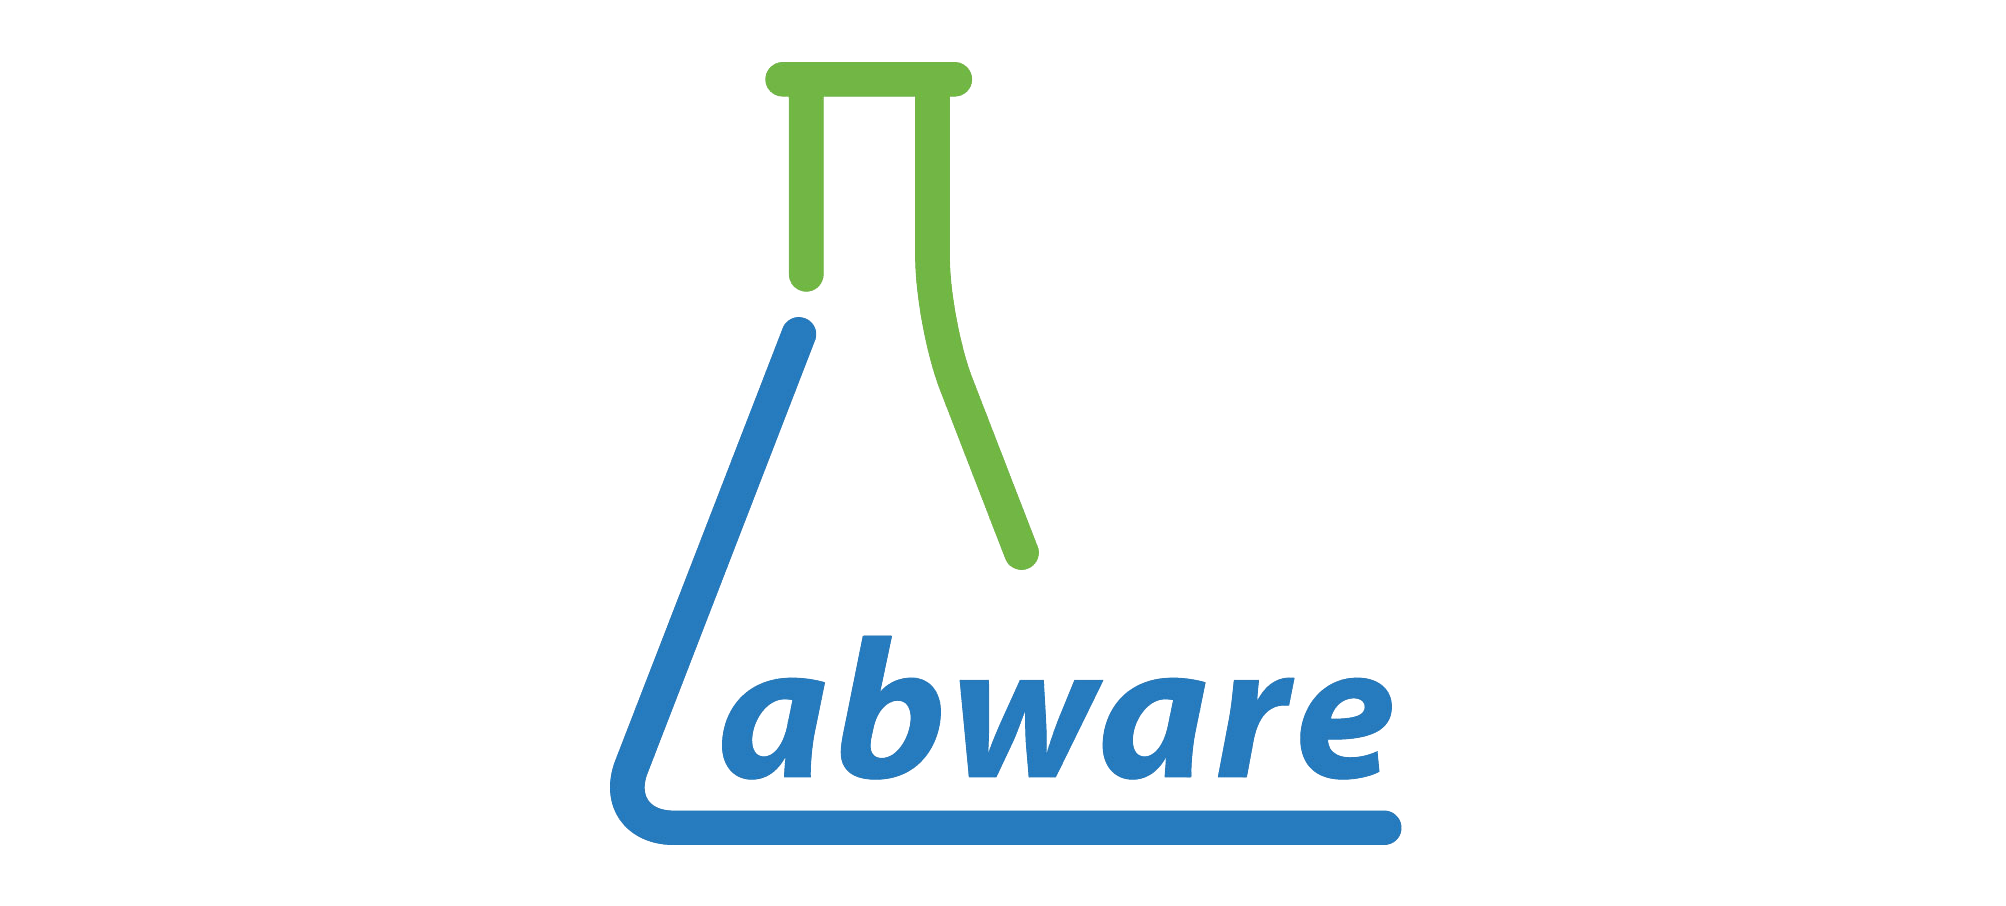 Hong Kong Labware Company Limited